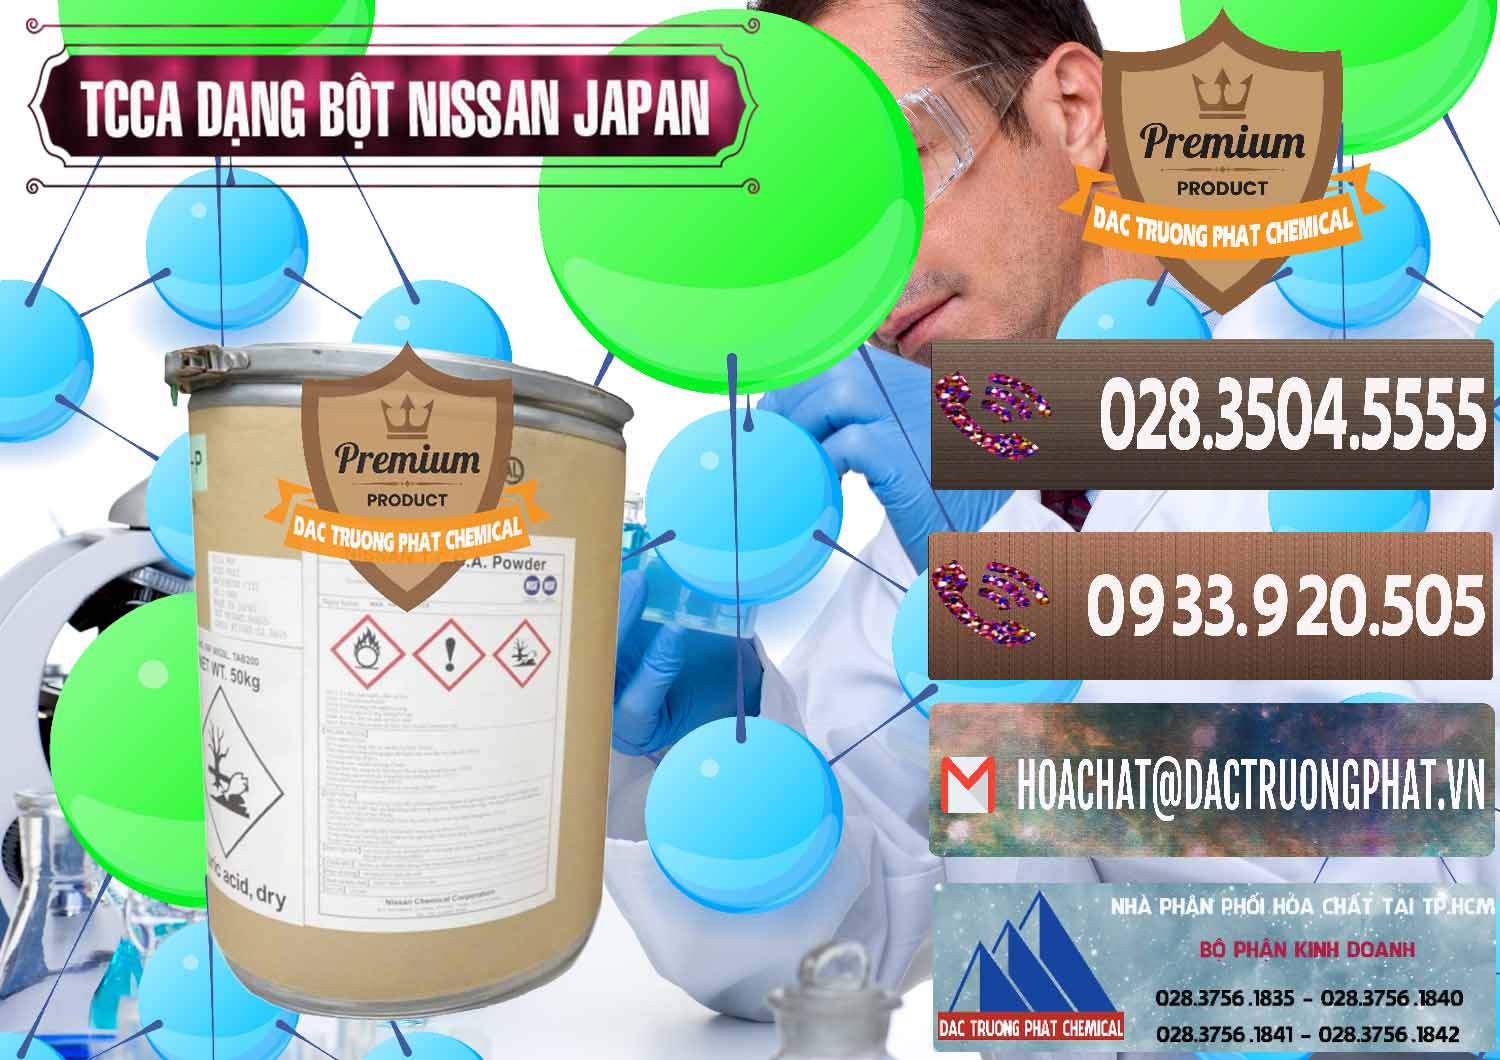 Công ty kinh doanh ( bán ) TCCA - Acid Trichloroisocyanuric 90% Dạng Bột Nissan Nhật Bản Japan - 0375 - Chuyên cung cấp & phân phối hóa chất tại TP.HCM - hoachatviet.net